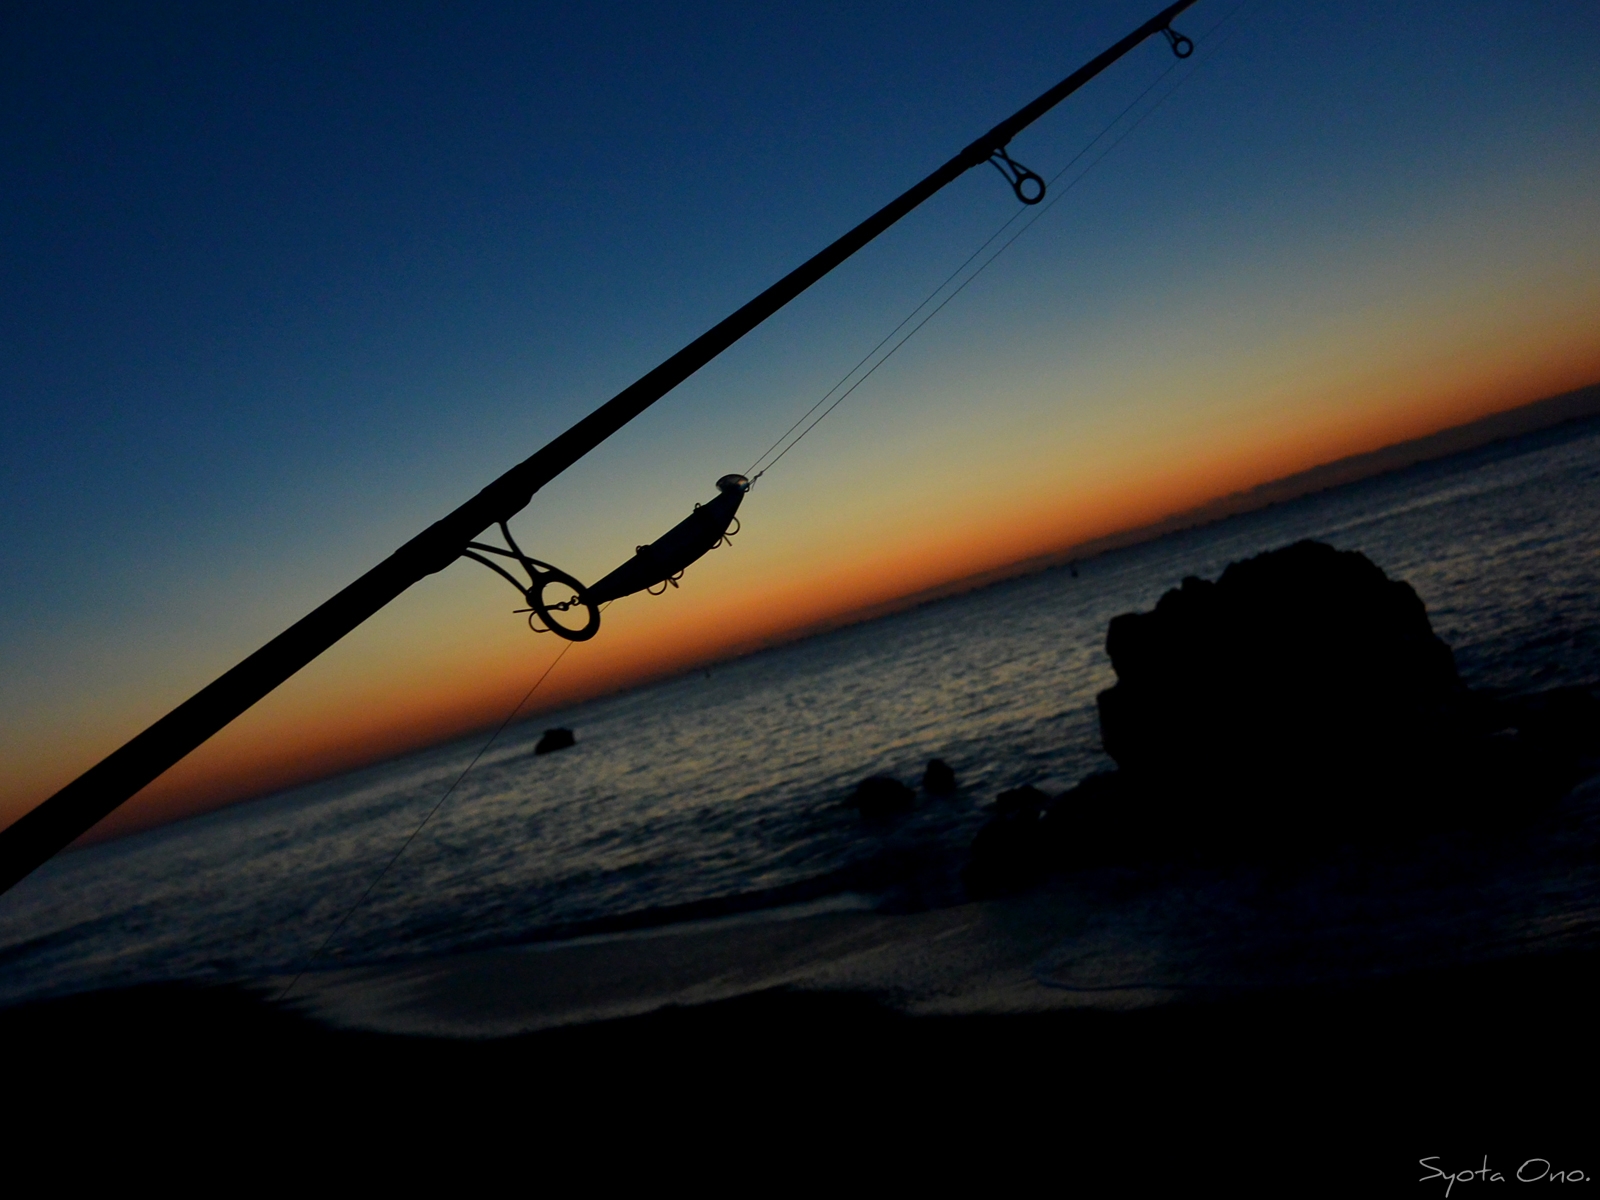 伊良湖 浜名湖 天竜川 知多 大移動を繰り返して辿り着いたシーバス メバル 釣りと旅 写真のブログ Nossa ノッサ